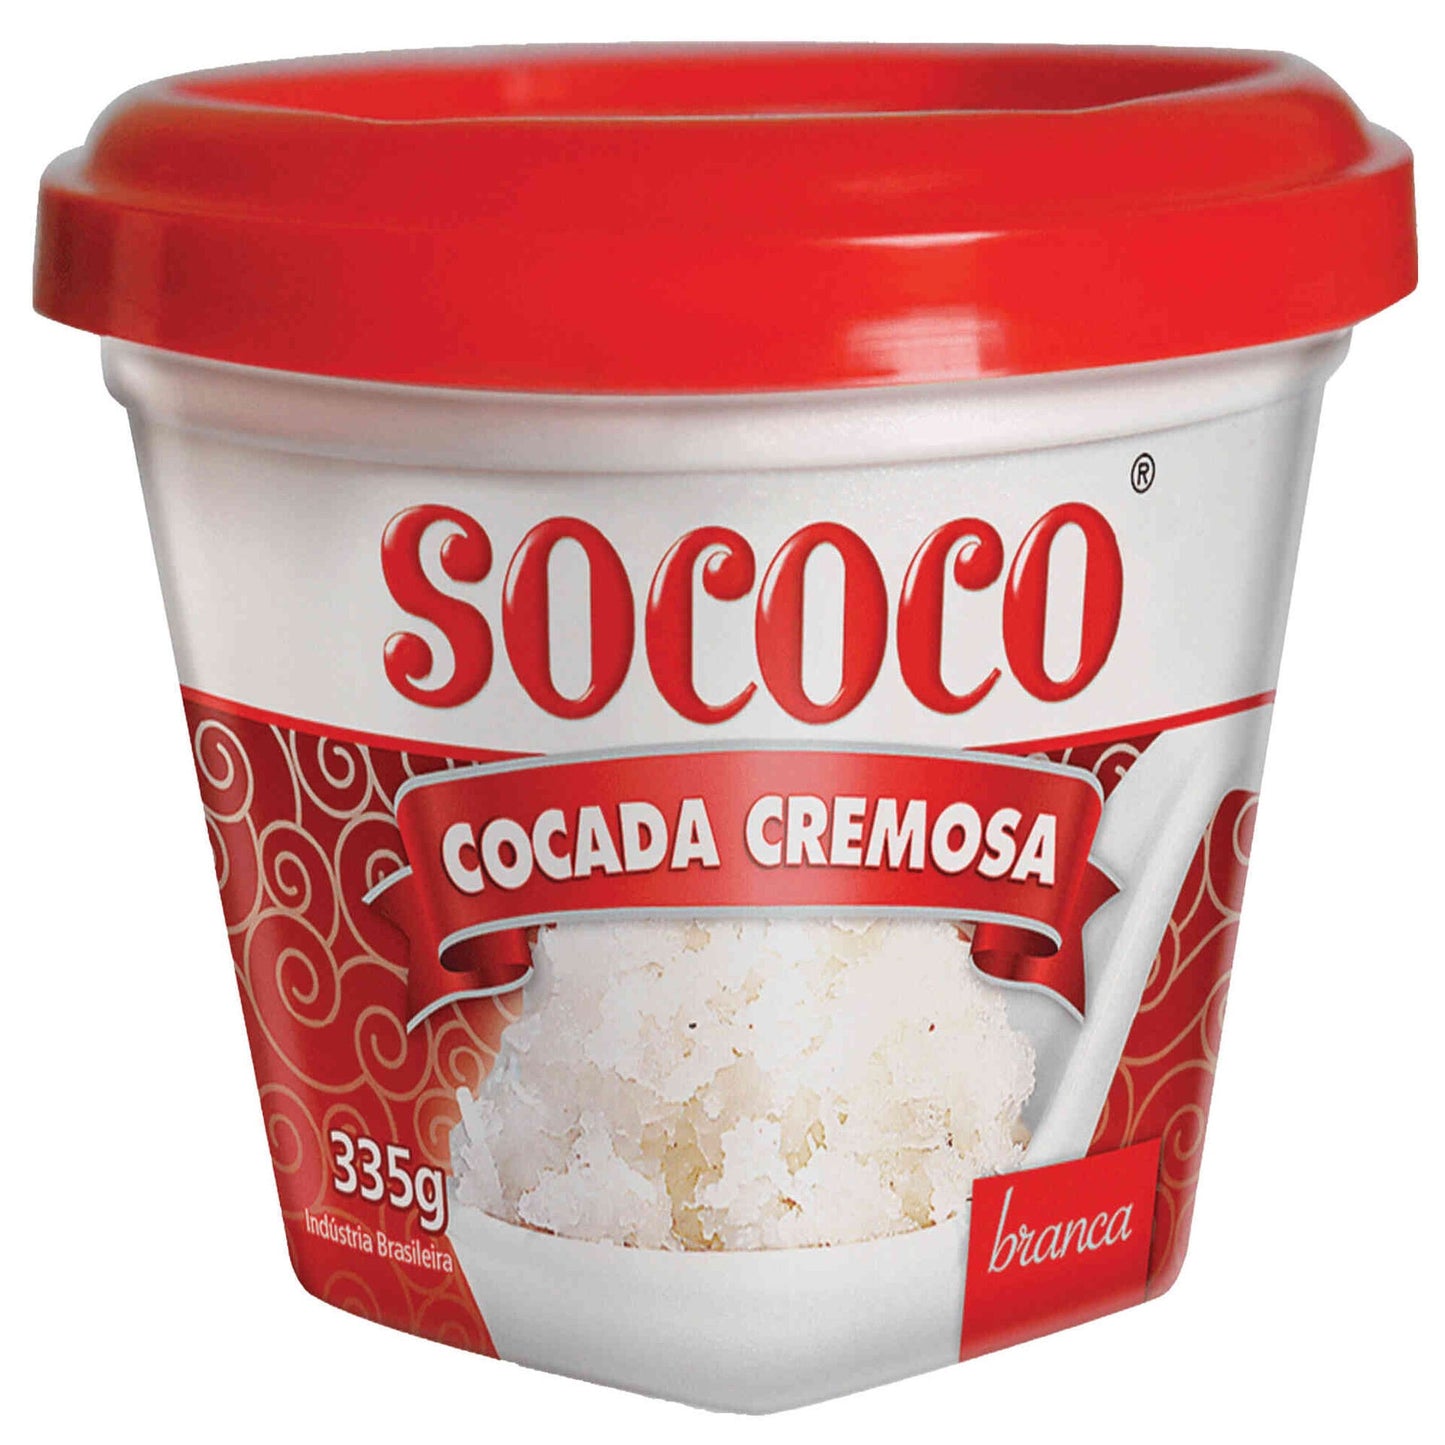 White Creamy Cocada Sococo 335g